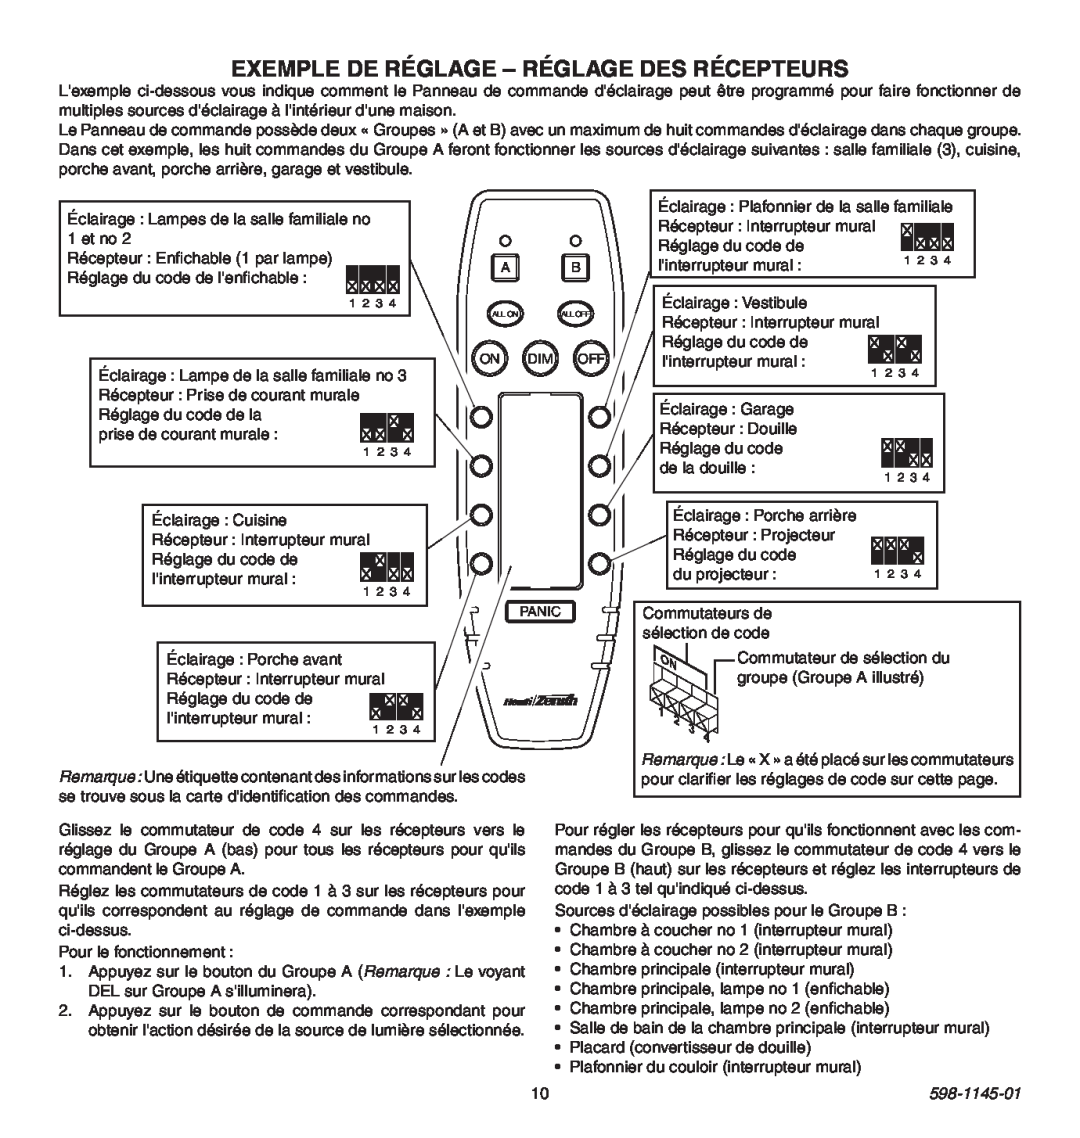 Heath Zenith Multi-Channel Remote Control manual EXEMPLE DE RÉGLAGE - Réglage des récepteurs, 598-1145-01 